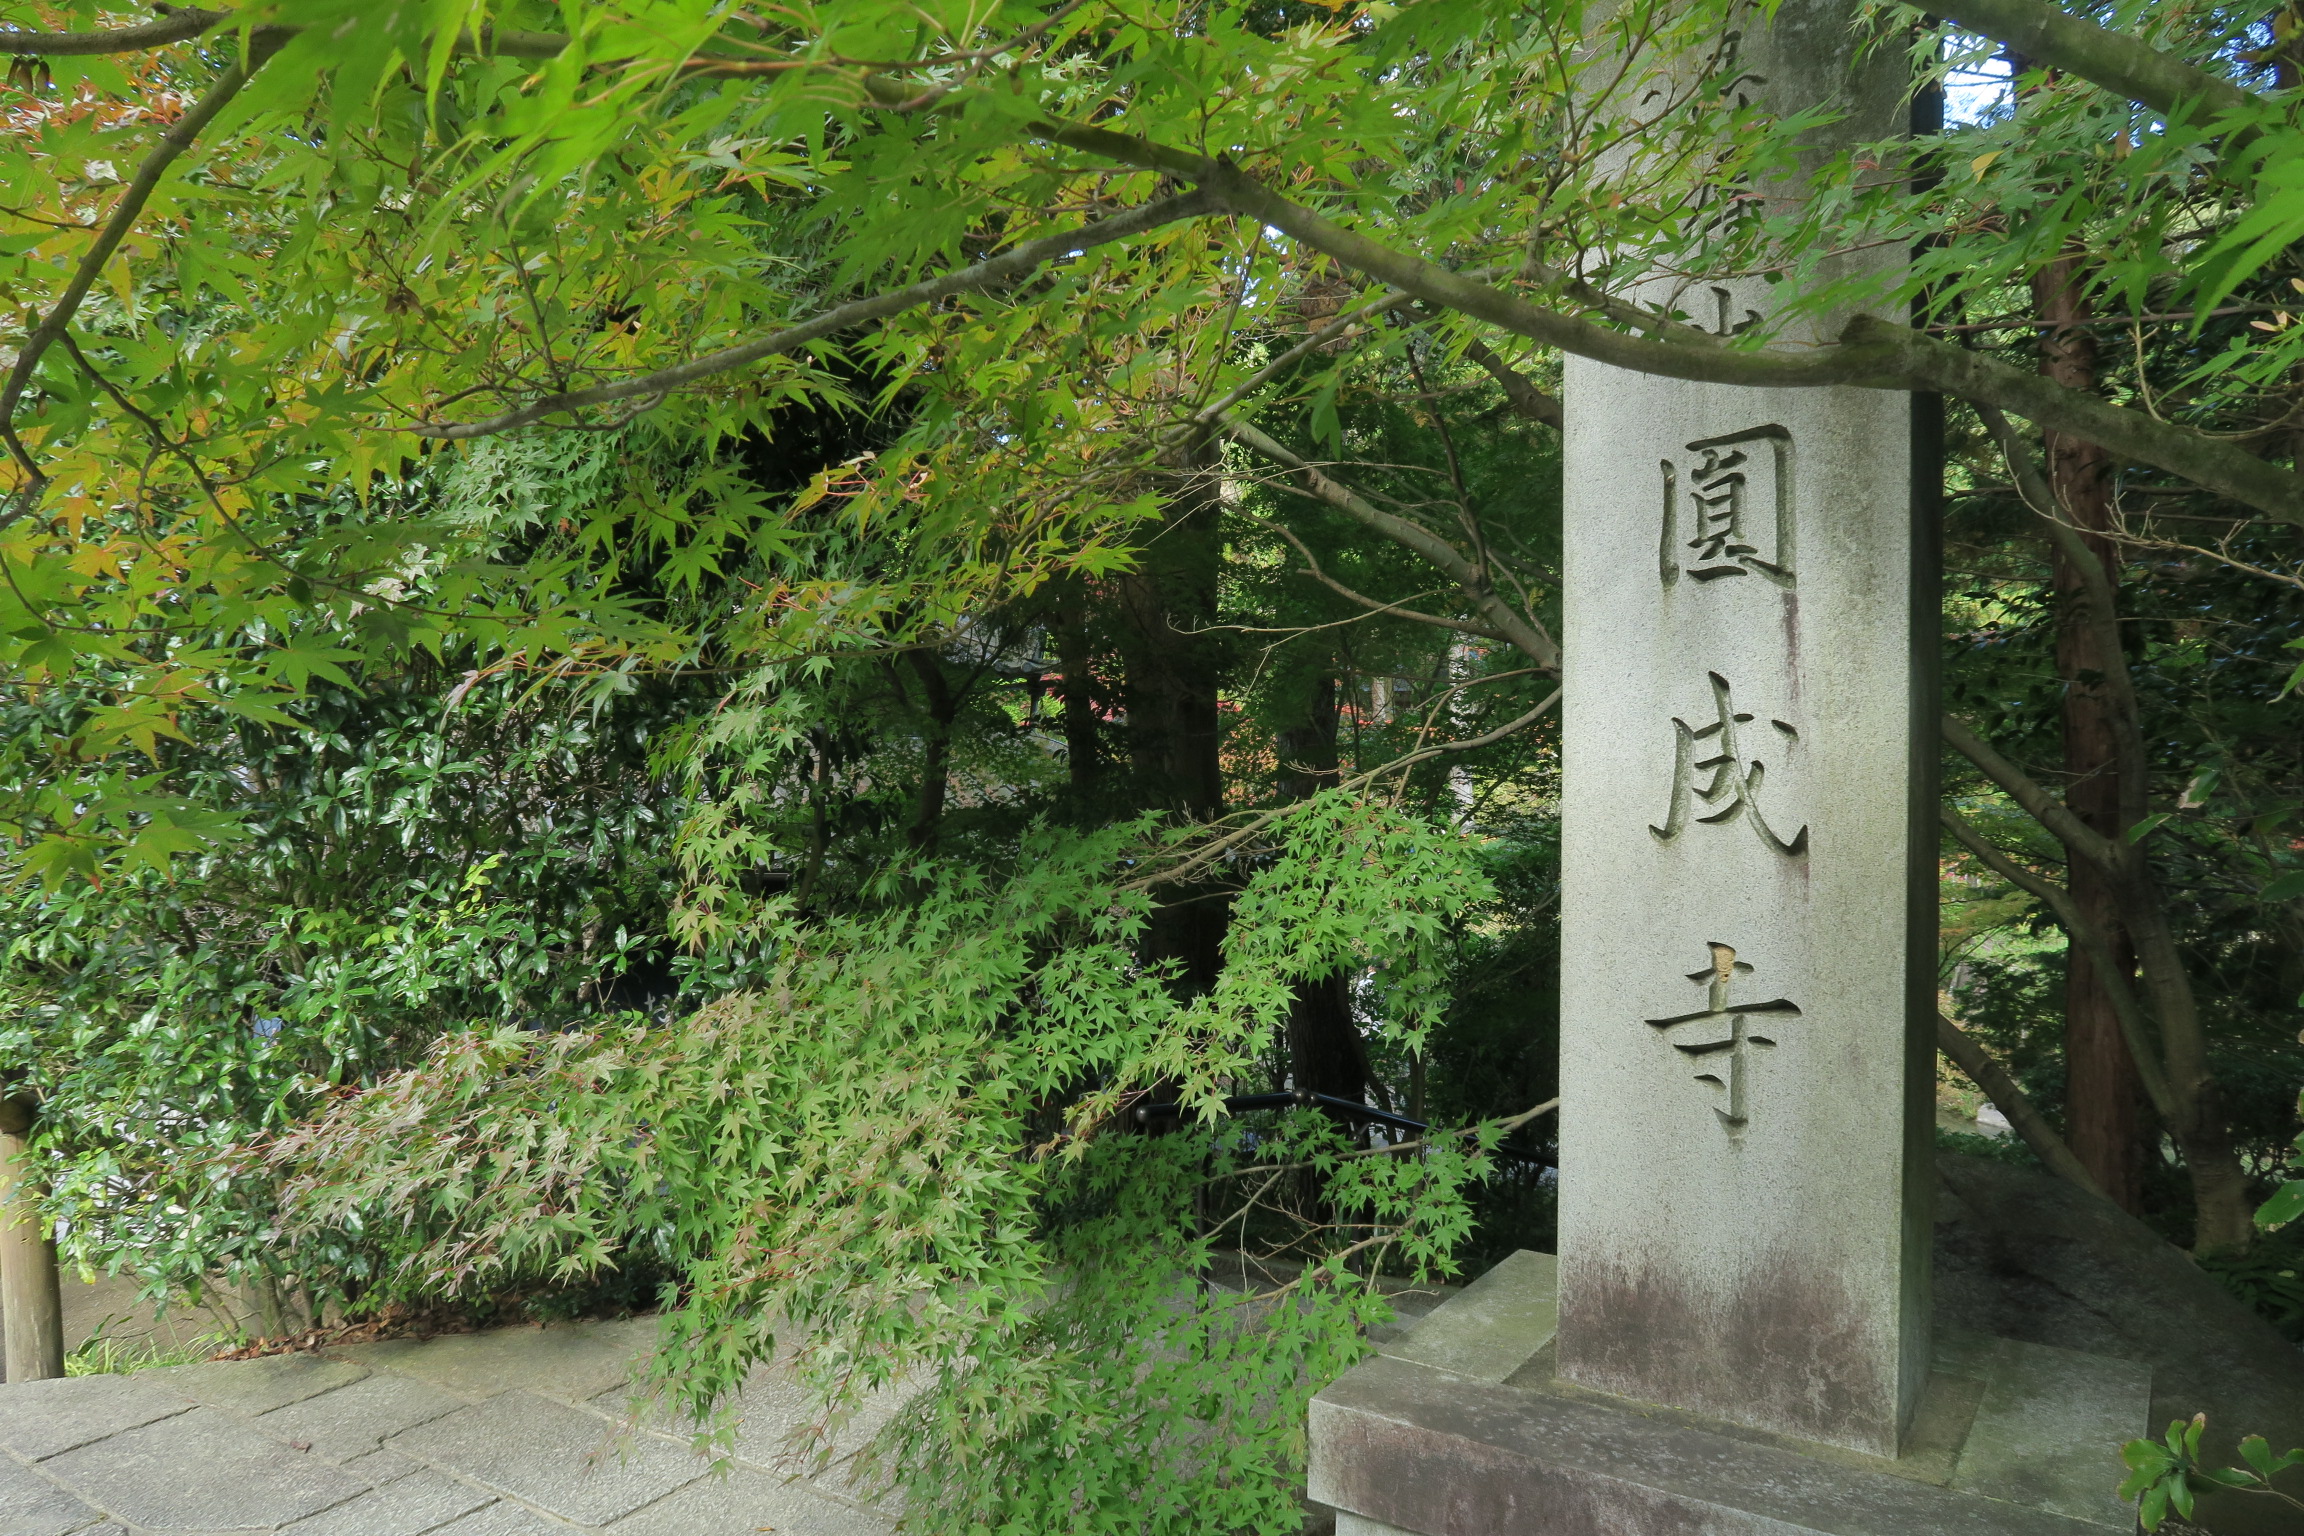 円成寺の庭園入口の紅葉はまだ青葉でした。